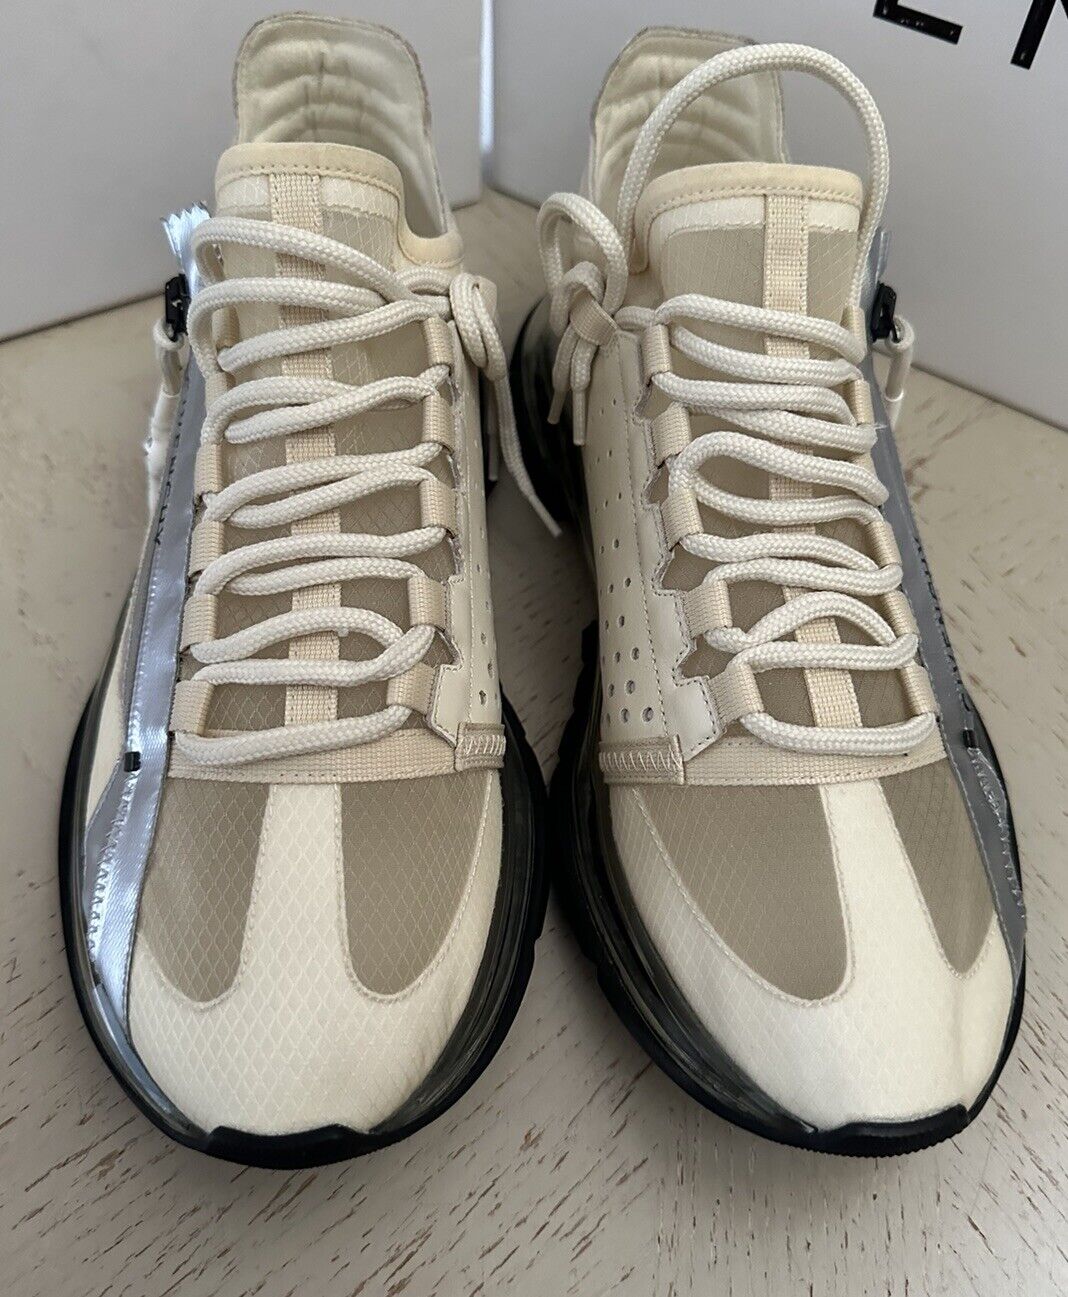 NIB Givenchy Damen Sneakers Schuhe Off White 10 US/40 Eu Italien